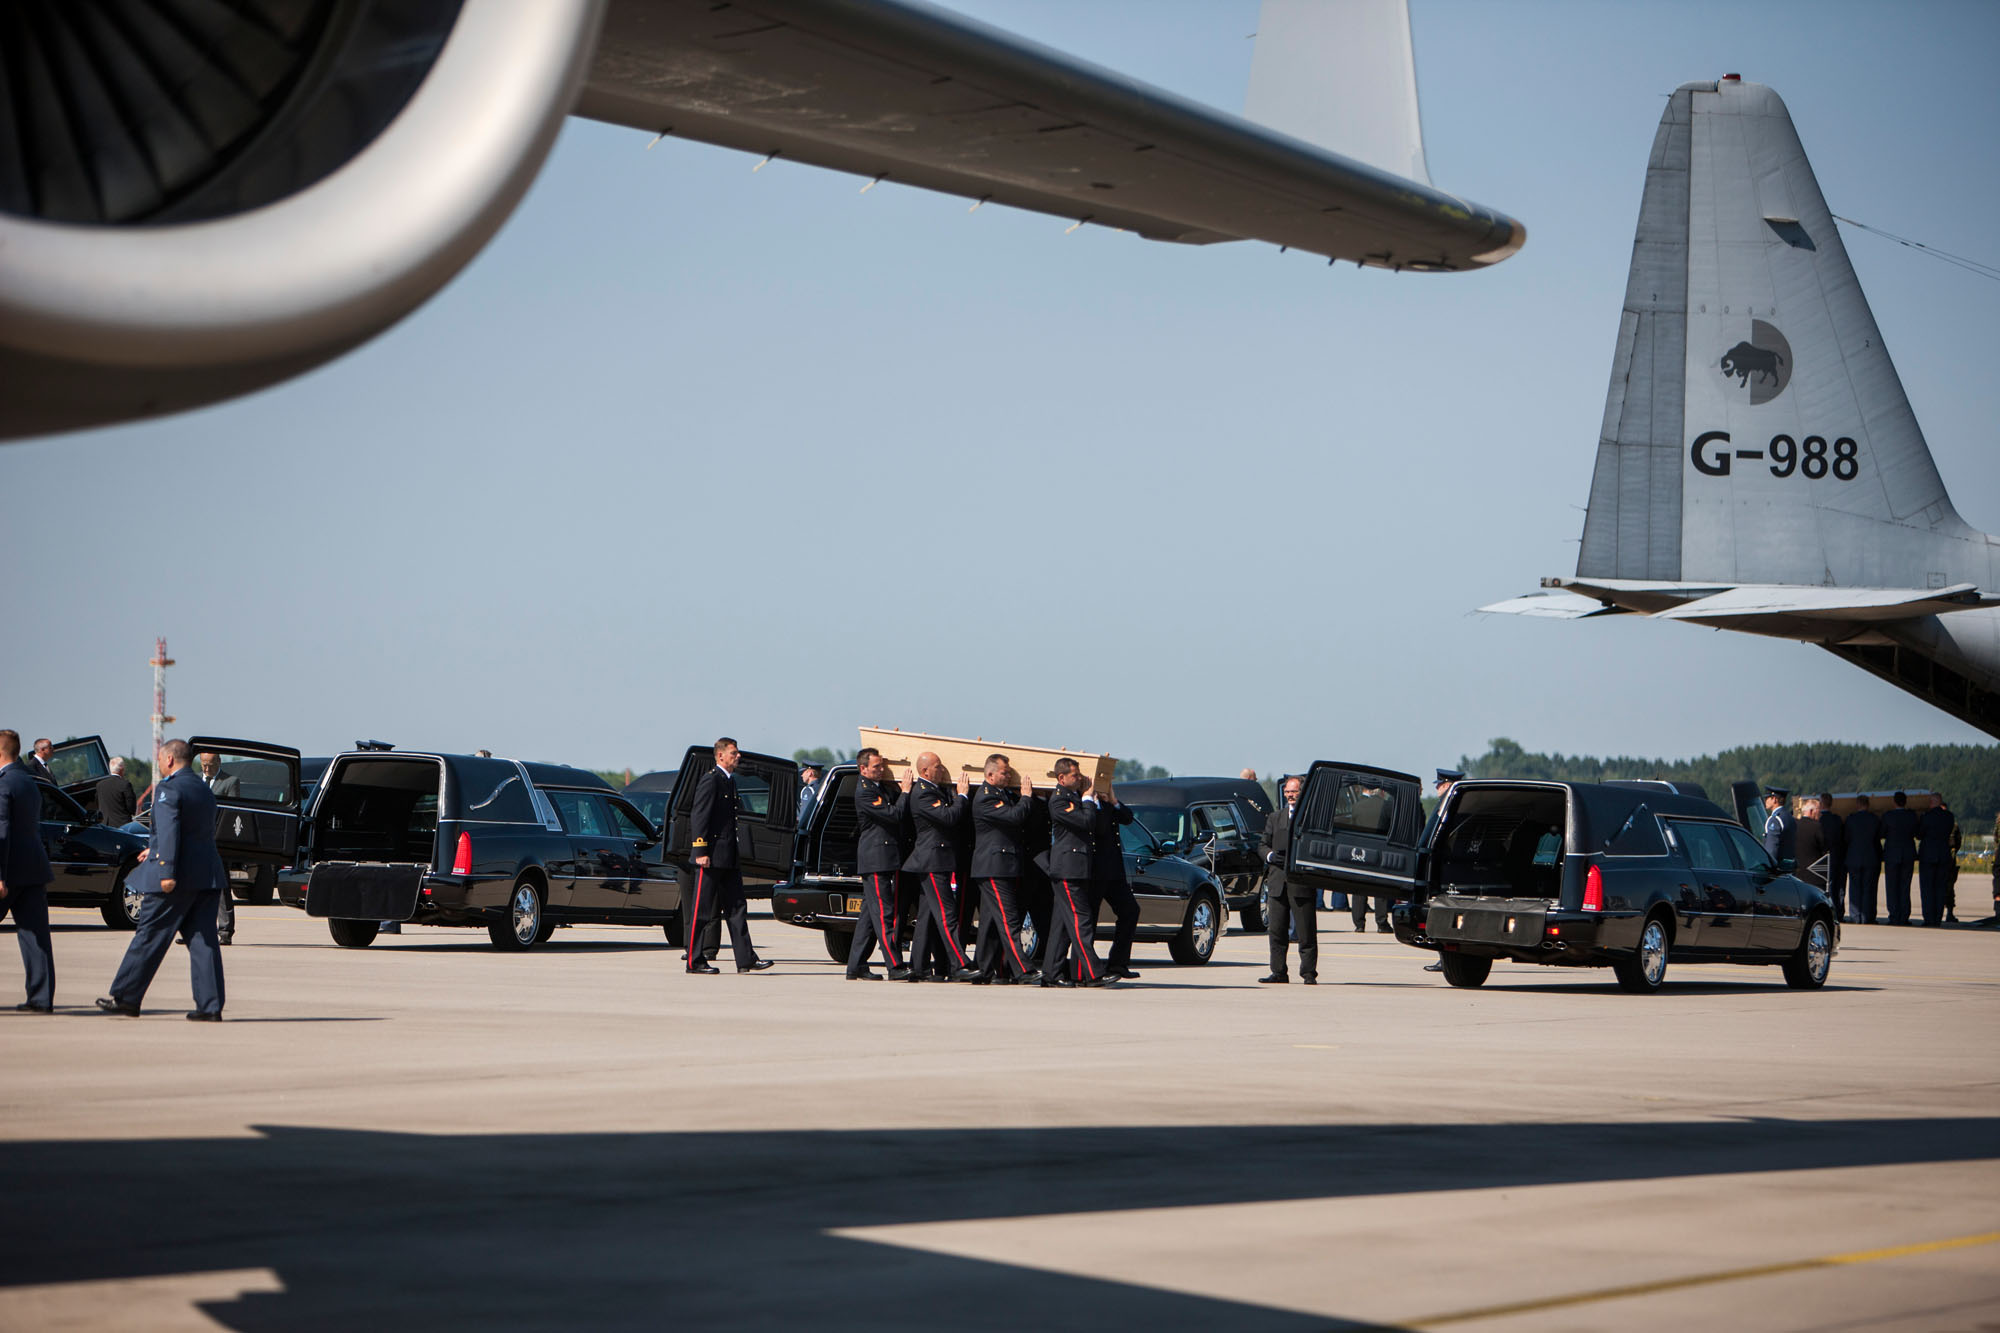 MH17 probe reveals close ties between Russia, Ukraine rebels